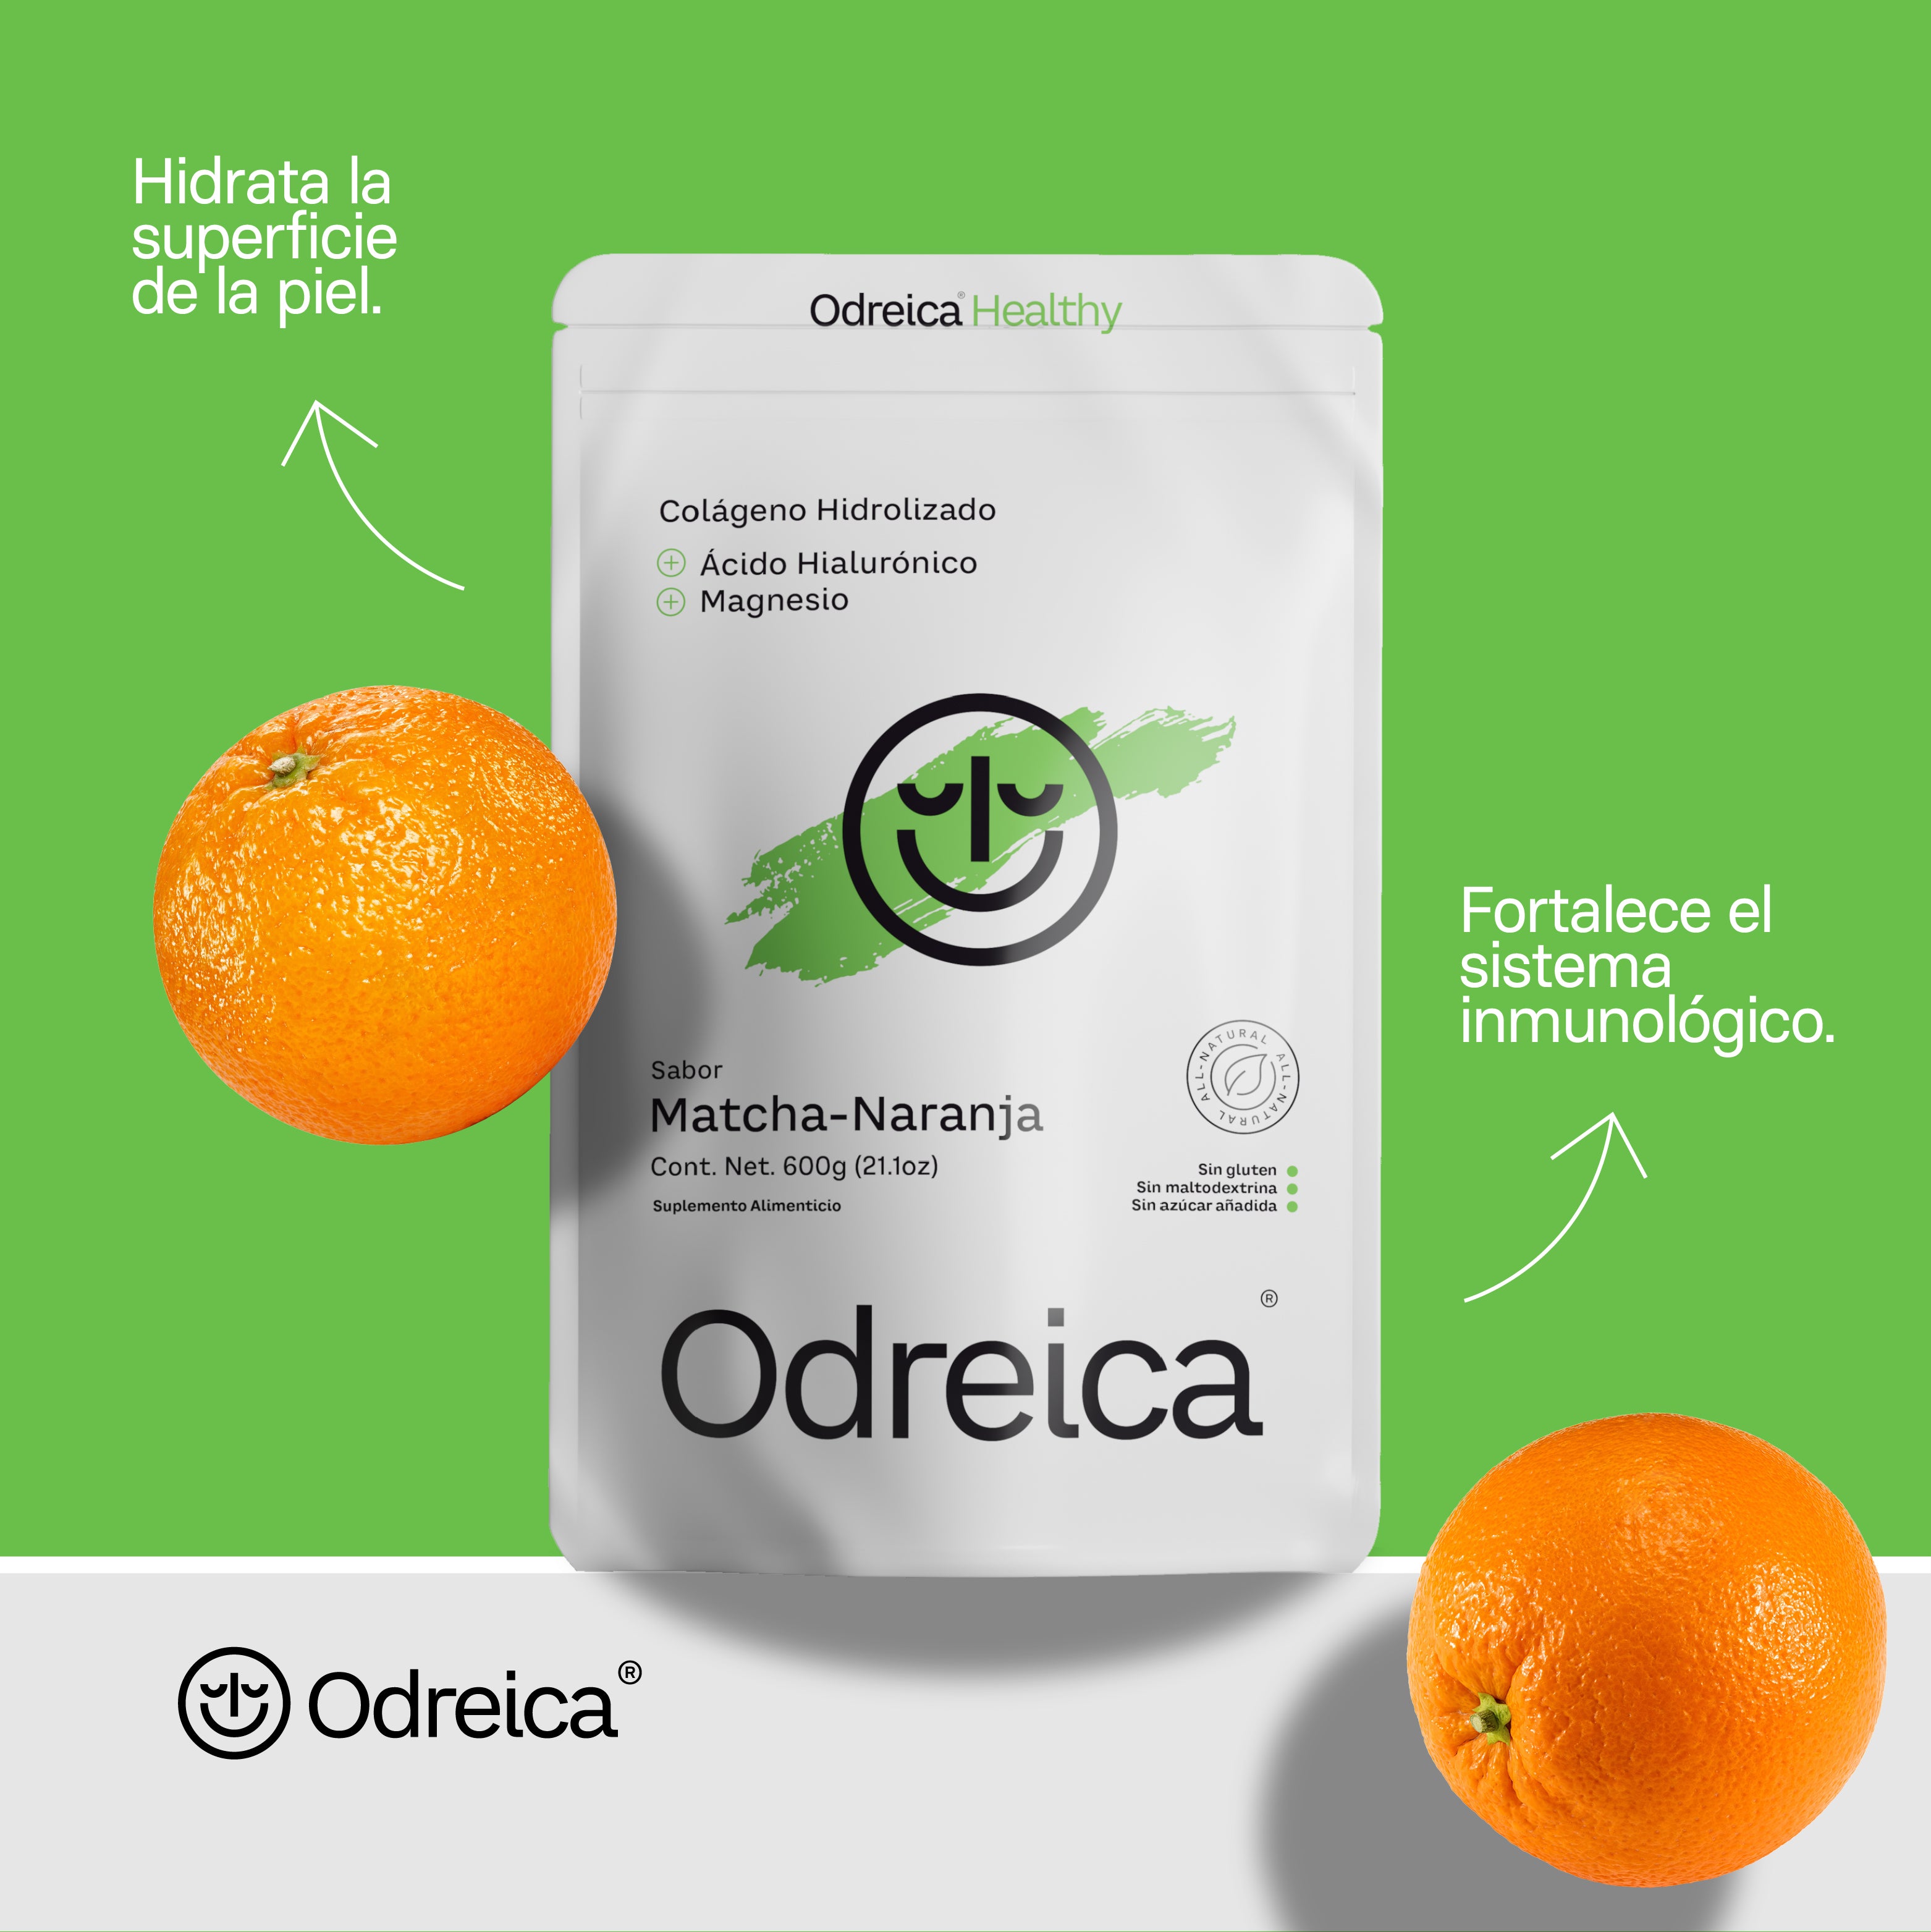 Colágeno Hidrolizado | Matcha-Naranja